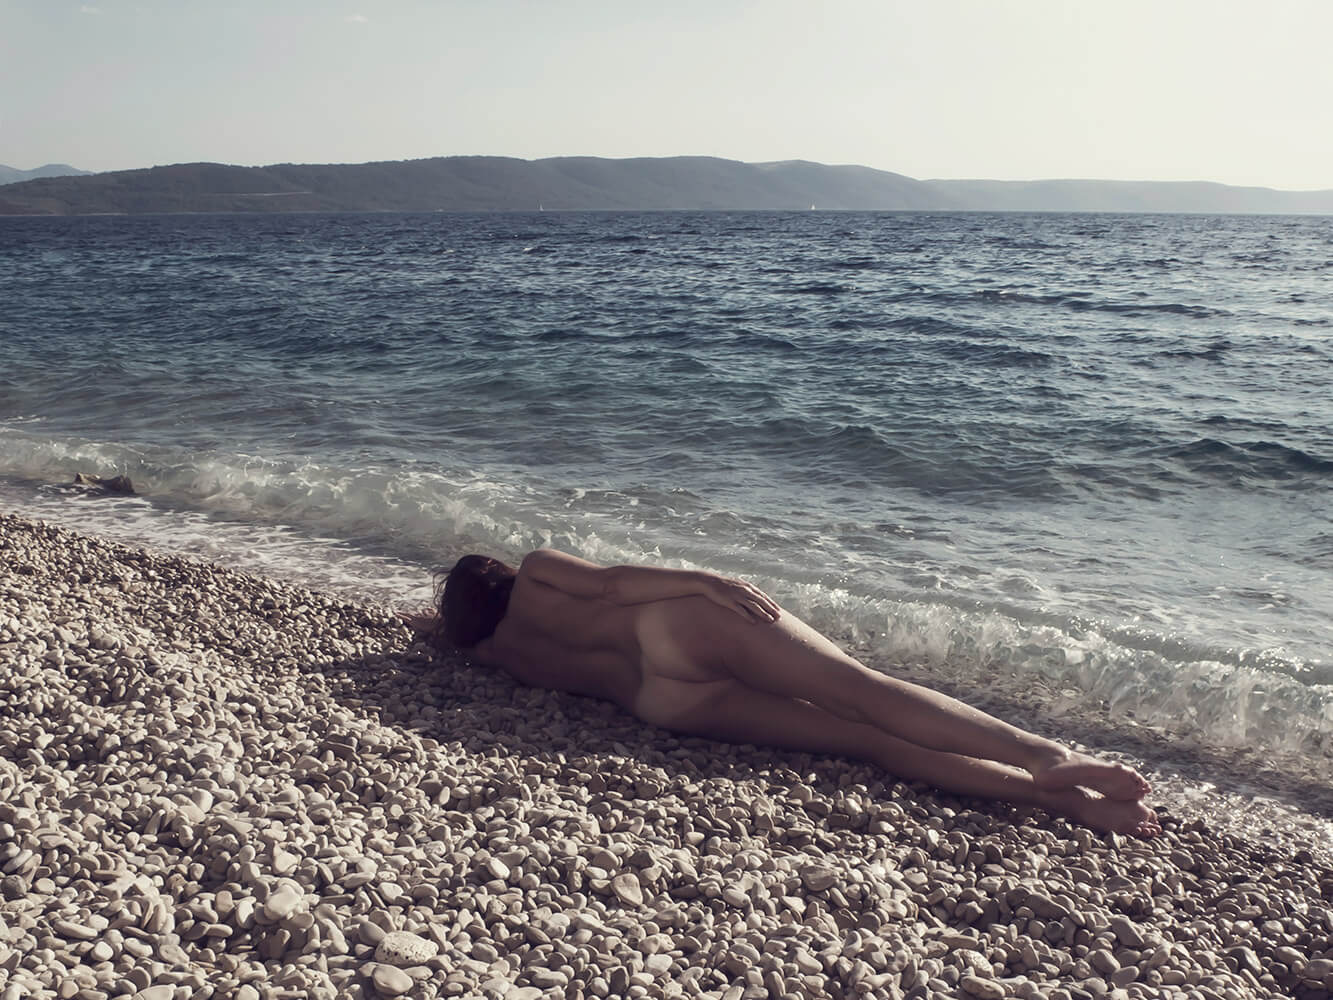 ležící ženský umělecký akt na oblázkové pláži u moře